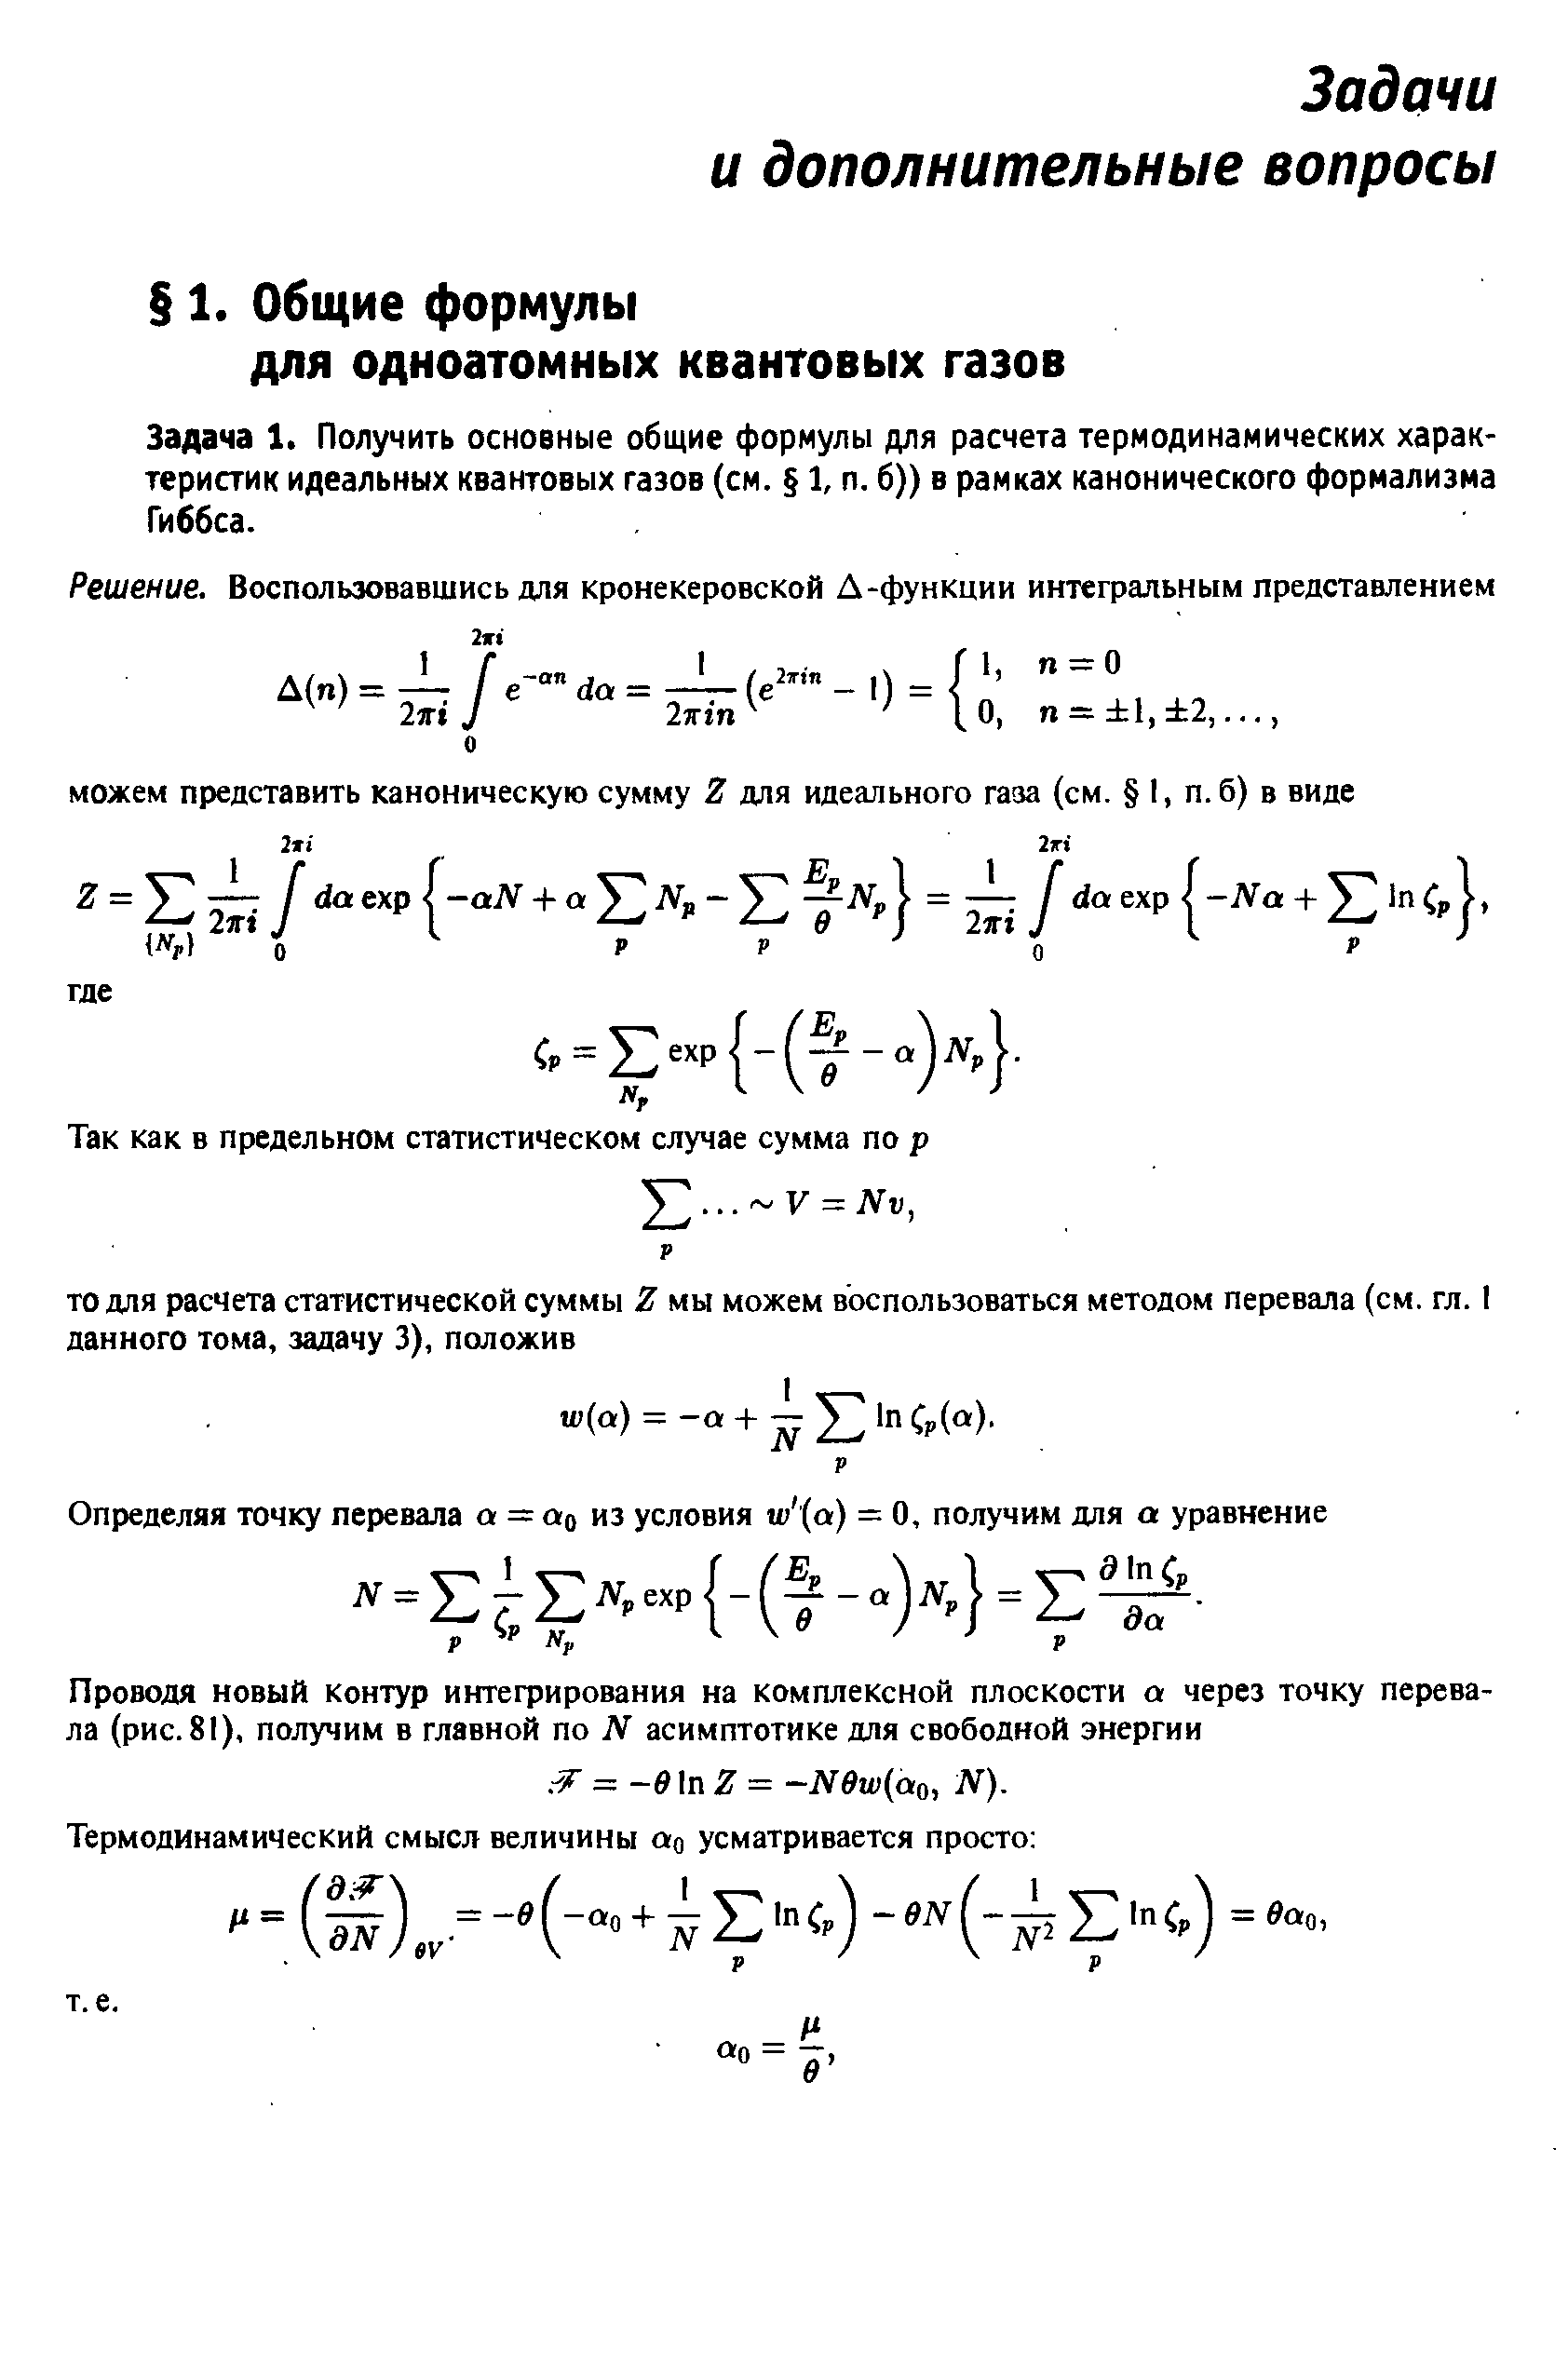 Задача 1. Получить основные общие формулы для расчета термодинамических характеристик идеальных квантовых газов (см. 1, п. б)) в рамках канонического формализма Гиббса.
